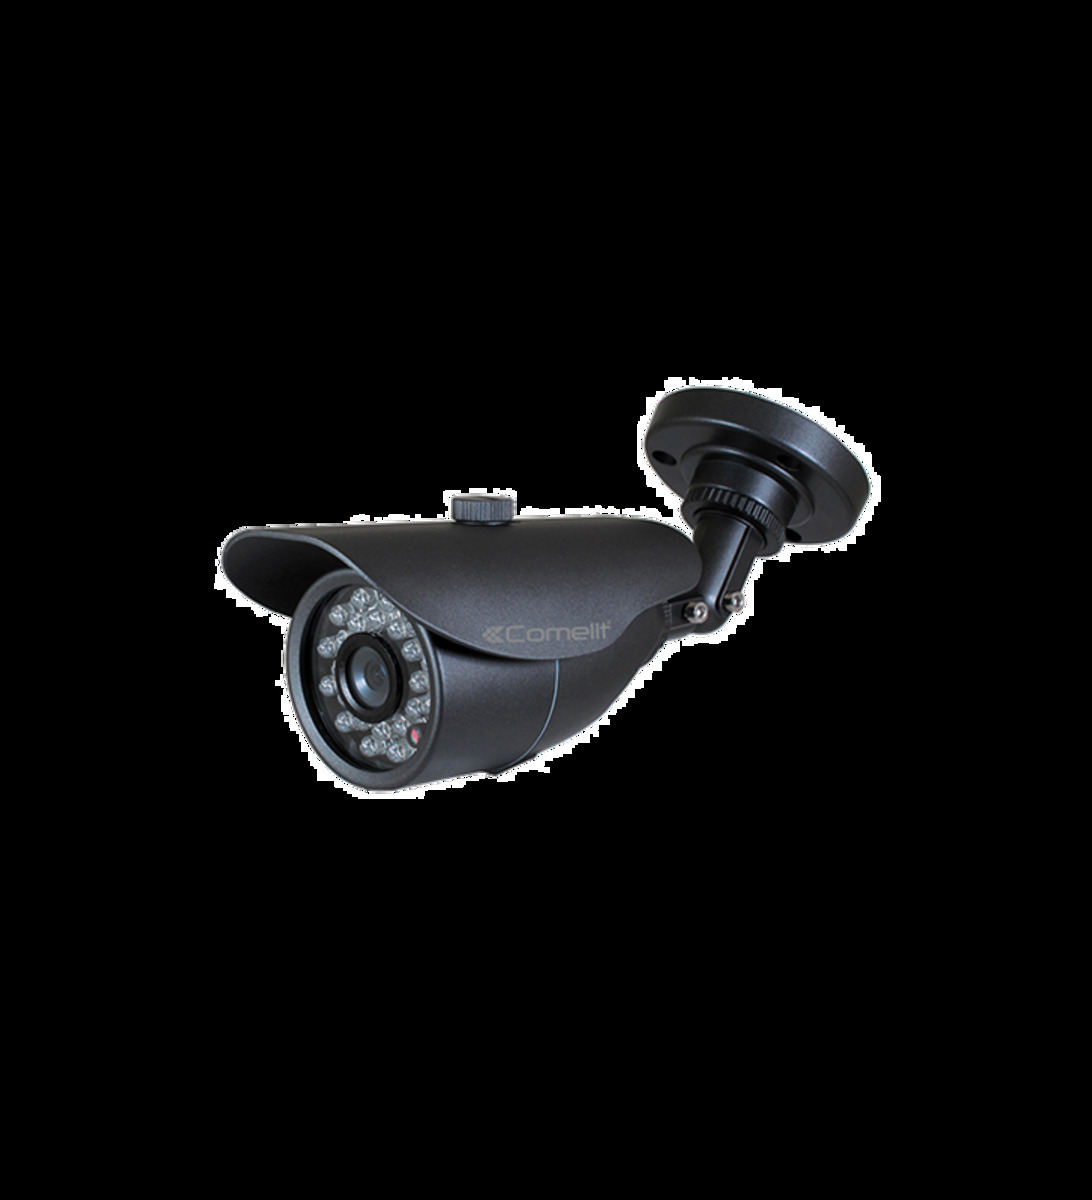 Caméra ahd all-in-one hd de vidéosurveillance - optique 2.8 mm - ahcam606c - comelit